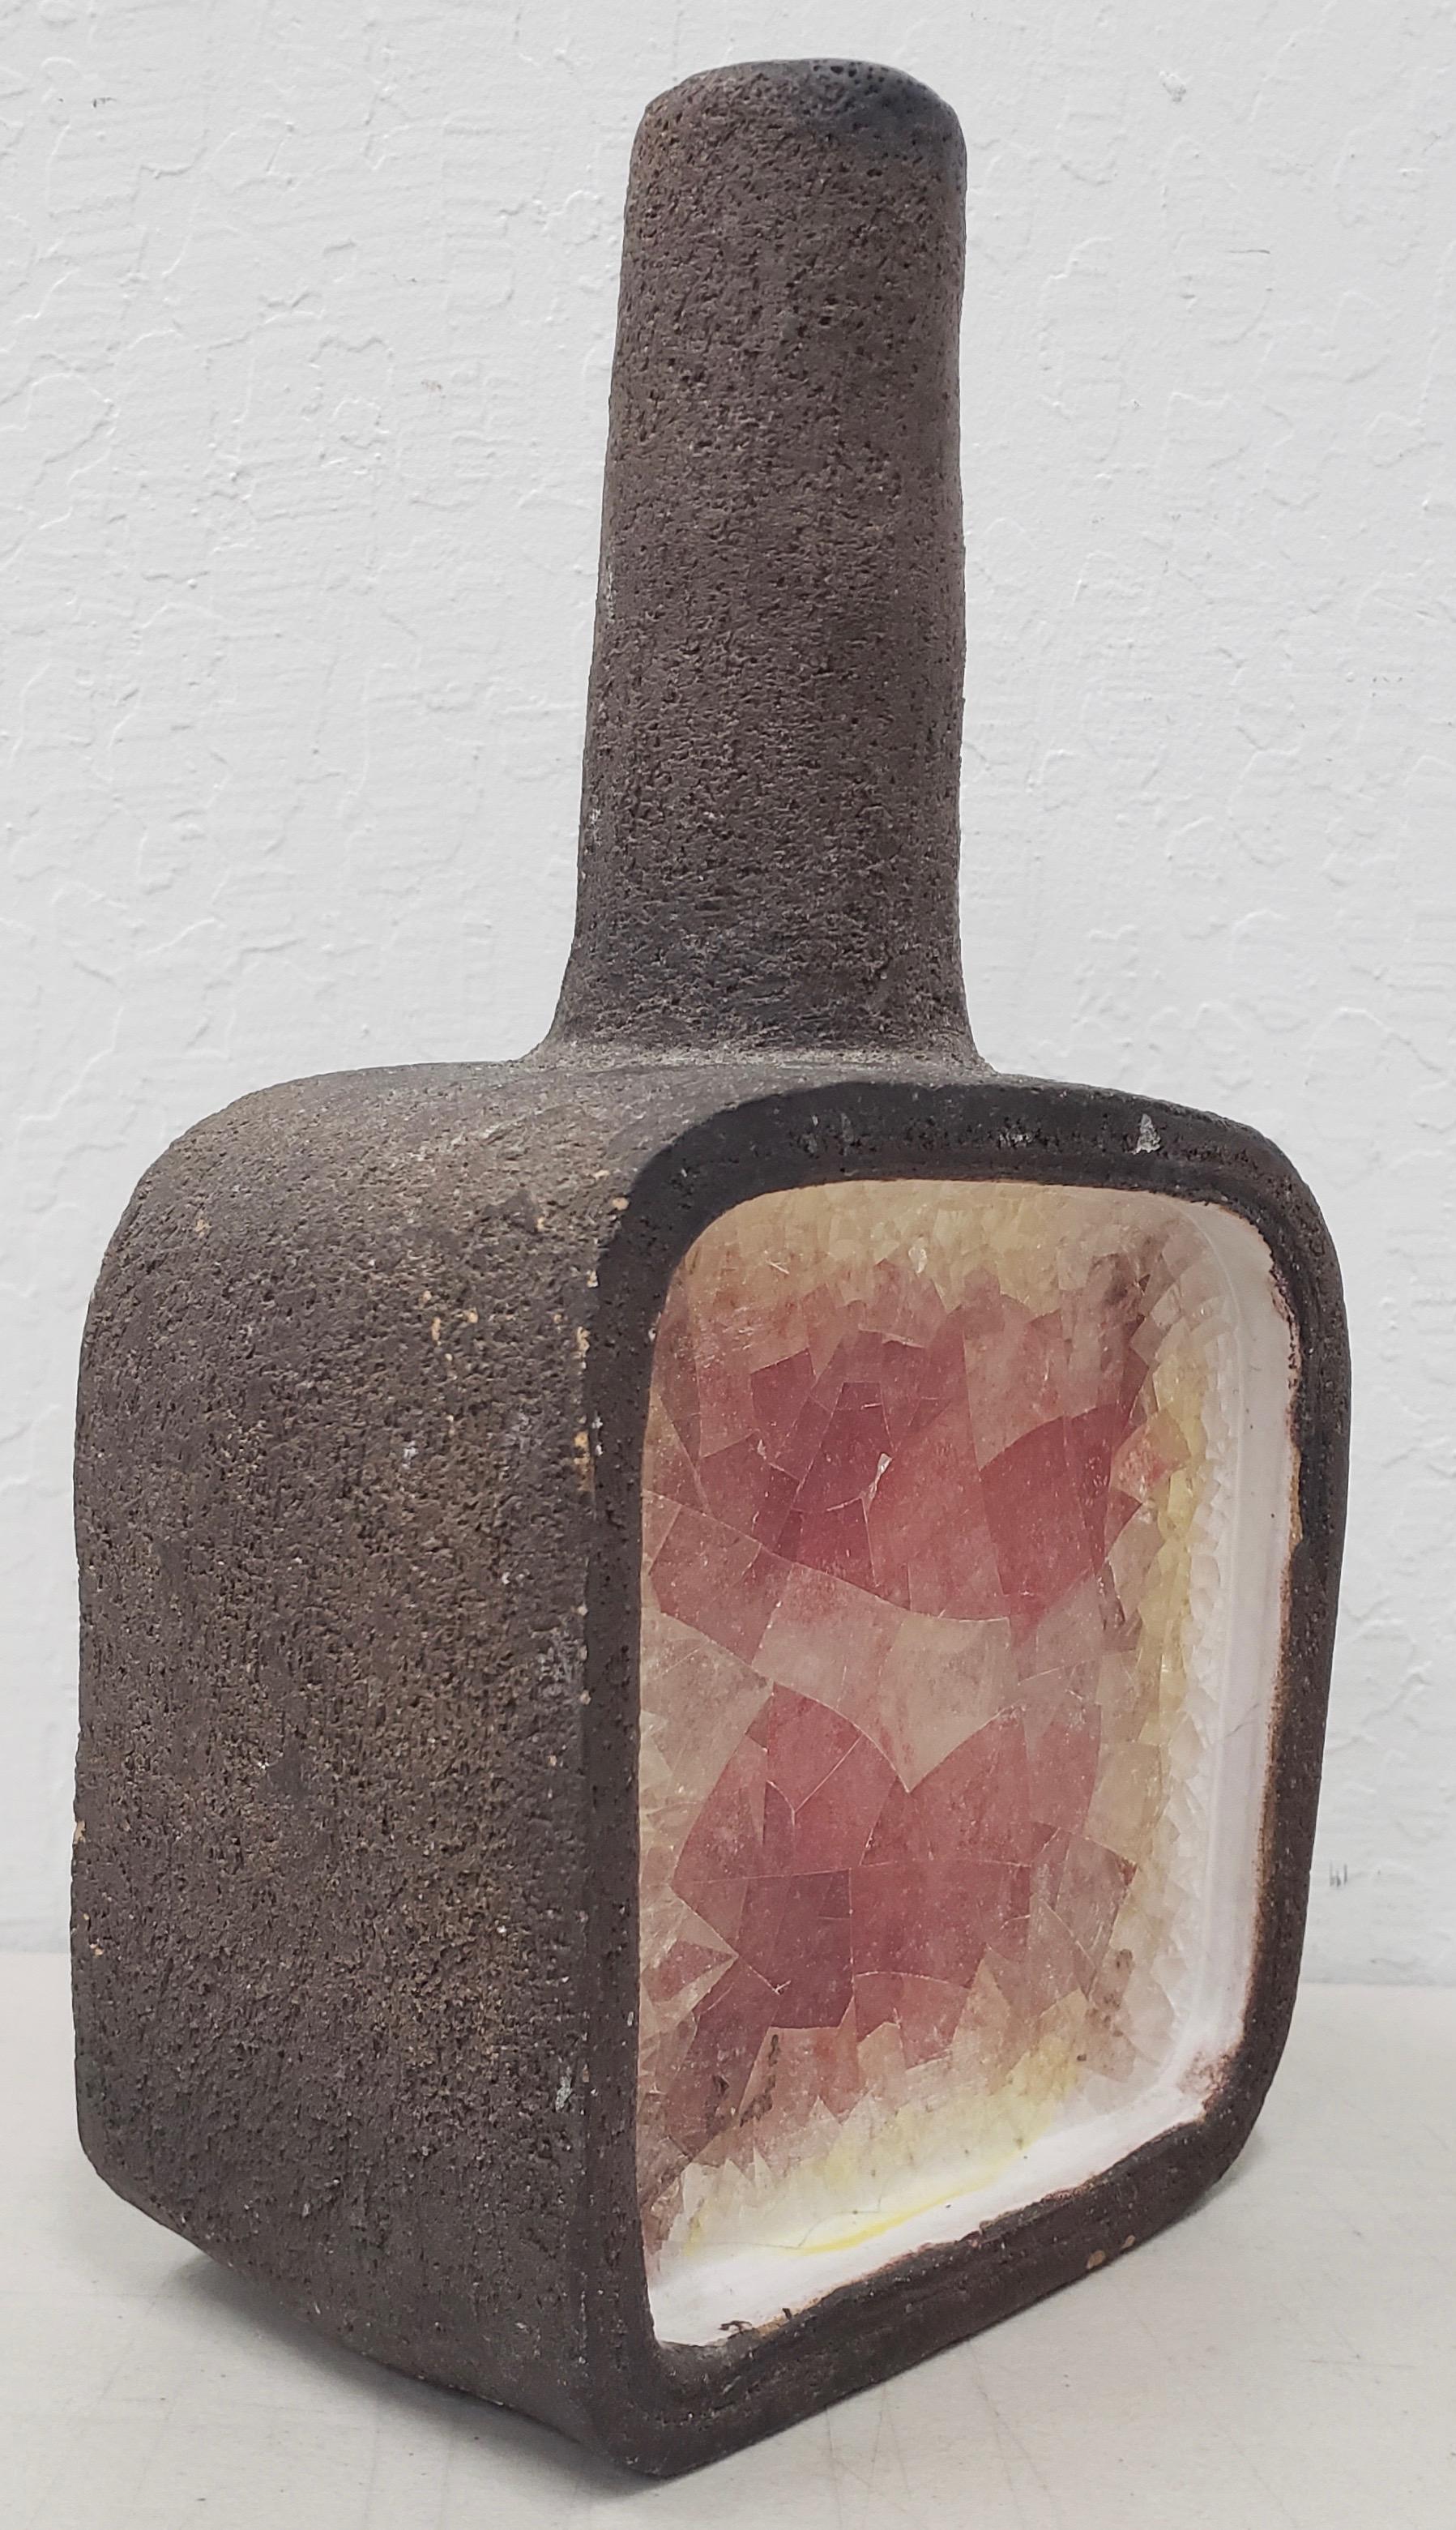 Vase aus Keramik und geschmolzenem Glas von Aldo Londi für Bitossi, ca. 1950er Jahre

Seltene Keramikvase mit Glasfront des italienischen Designers Aldo Londi für Bitossi.

Abmessungen 7